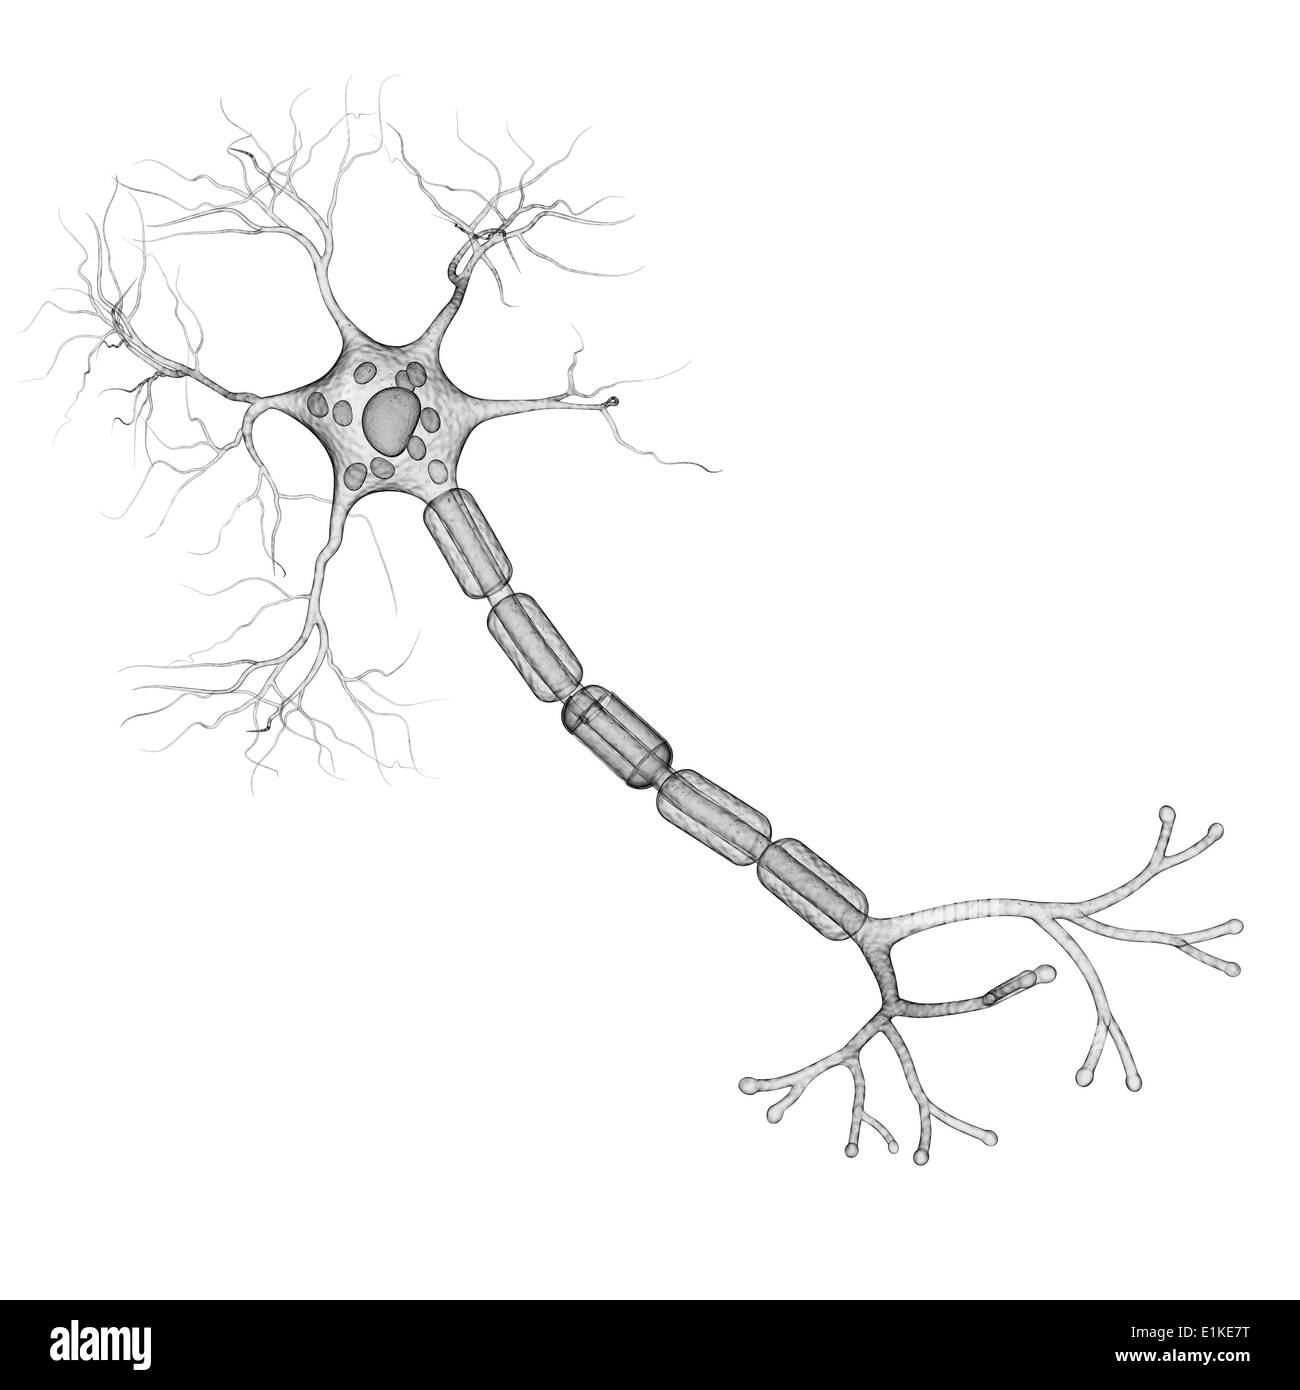 Equipo de células nerviosas ilustraciones. Foto de stock